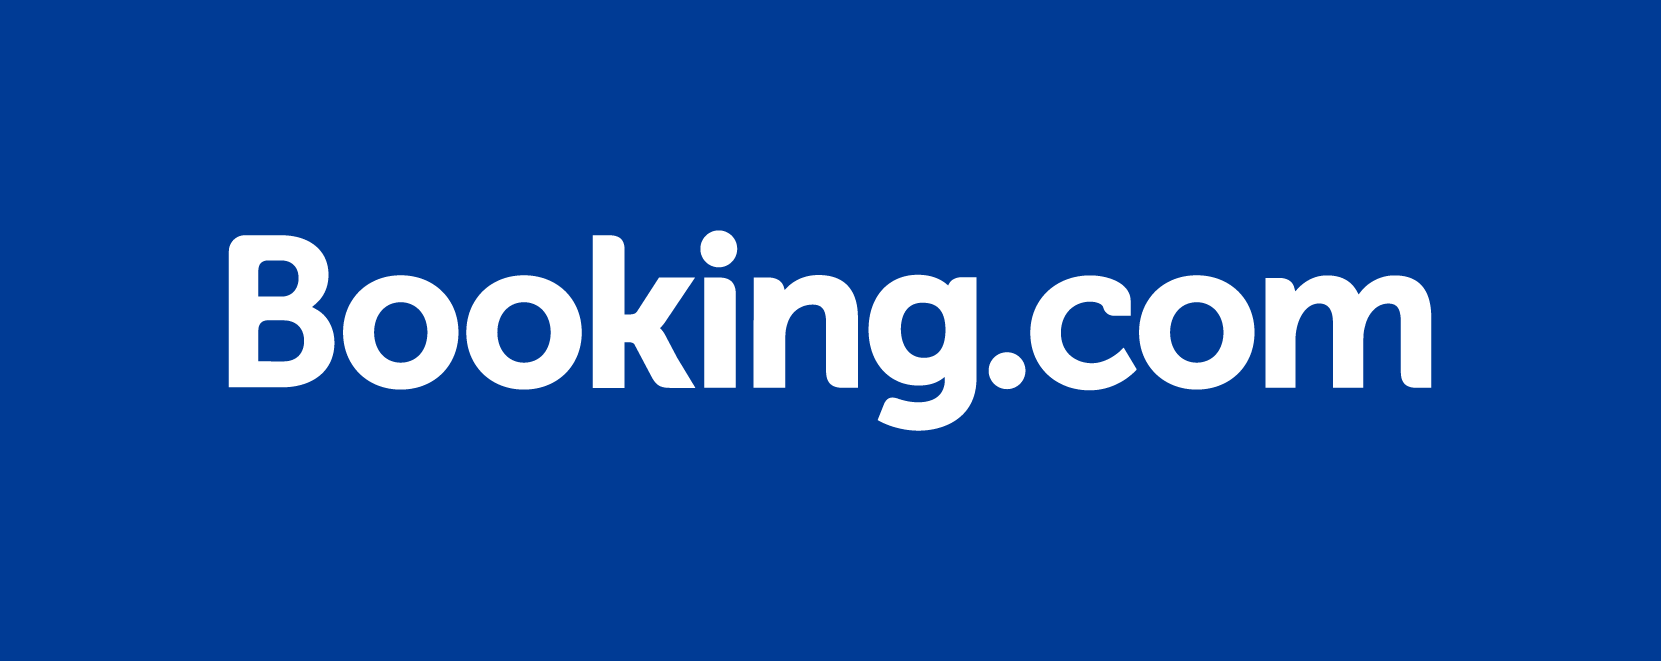 Booking.com Logo in blau mit weißer Schrift